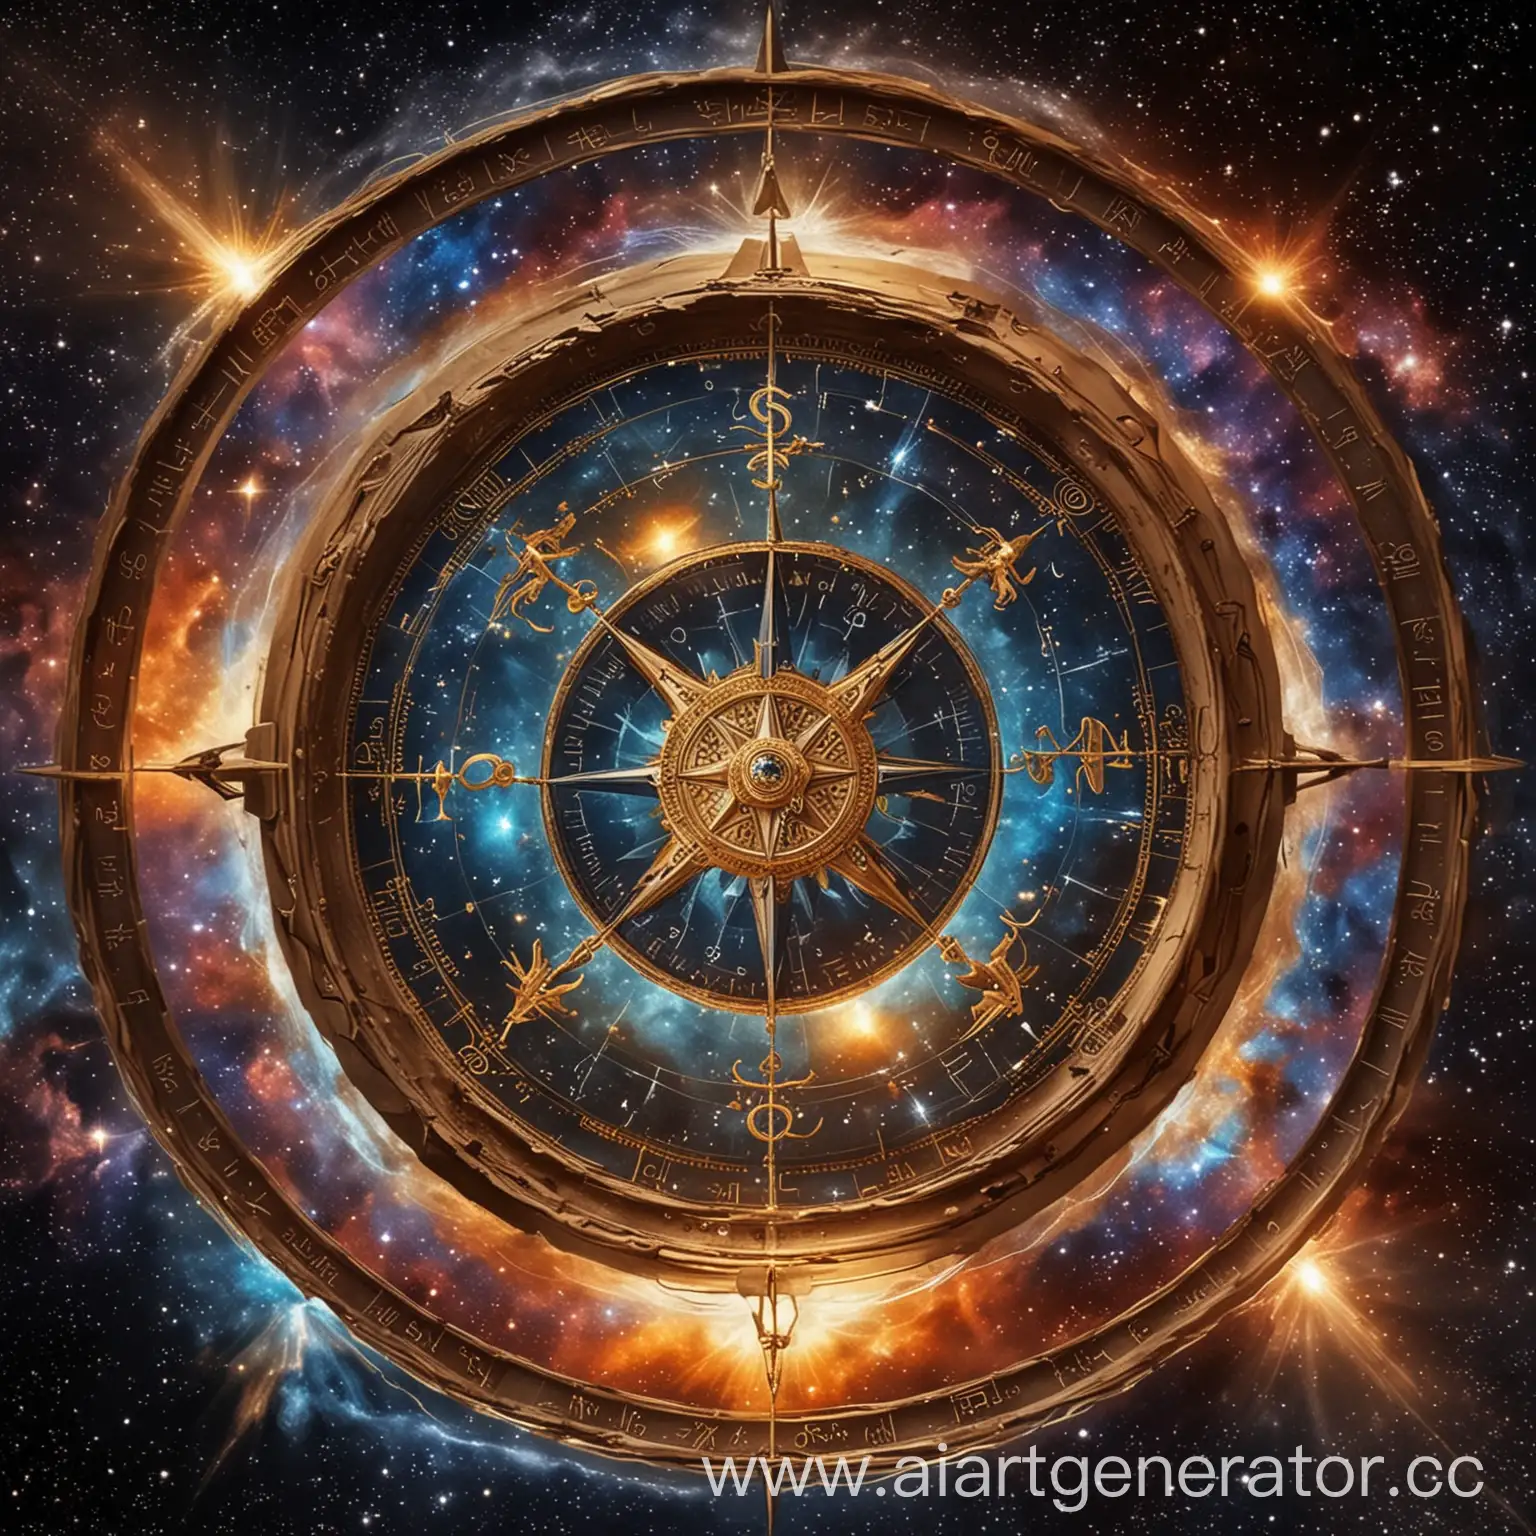 Компас в твой космос" Изображение души в виде компаса, астрологические символы как ореол. На фоне космоса